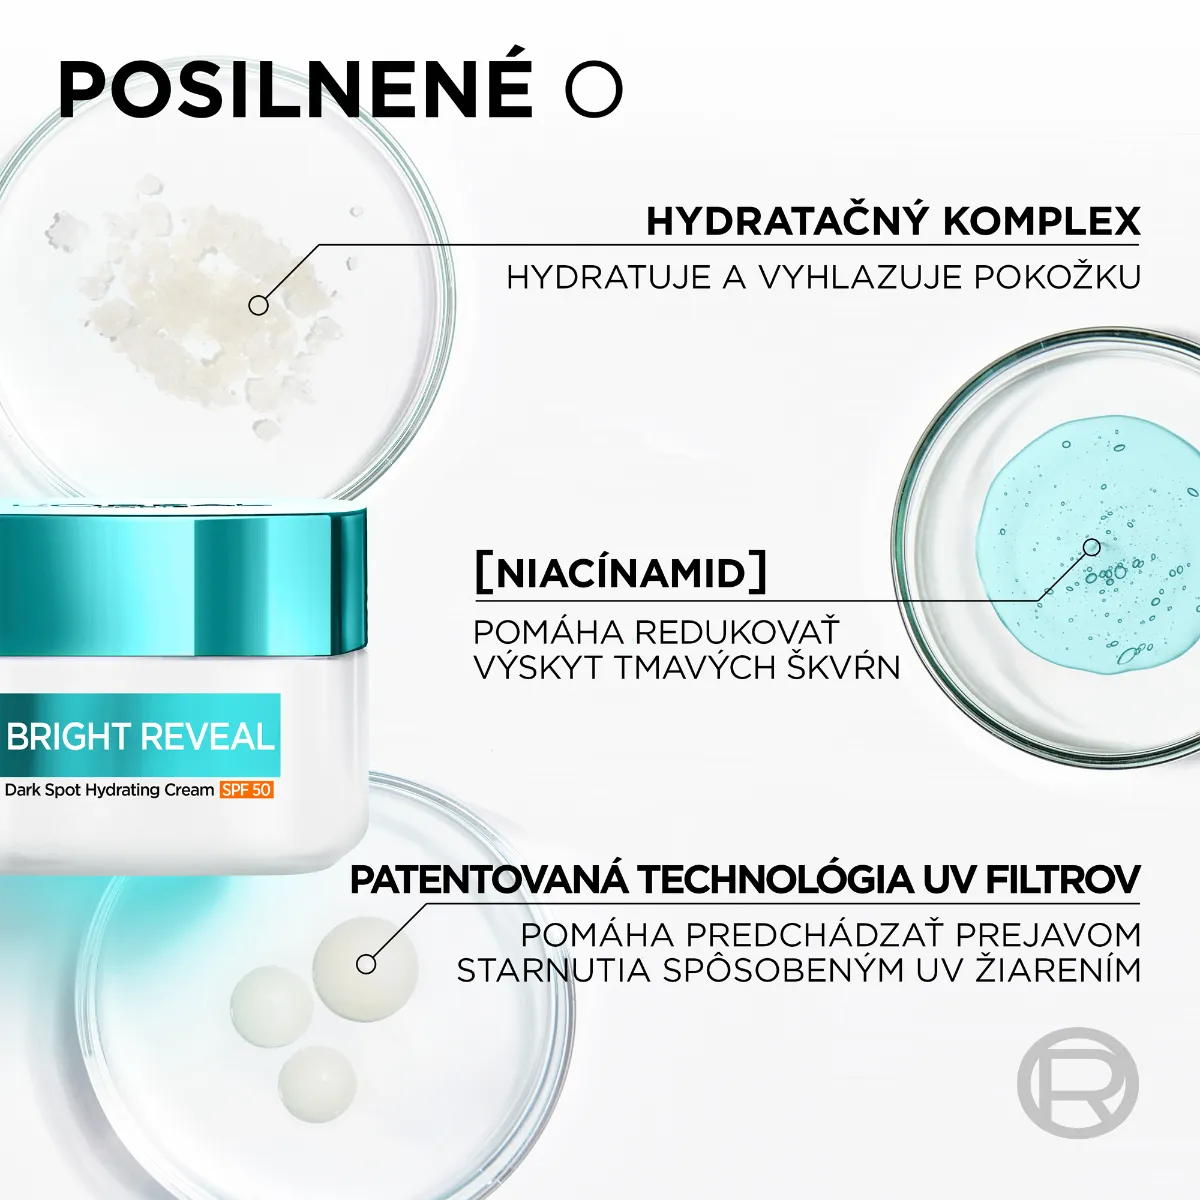 L'Oréal Bright Reveal hydratačný krém proti tmavým škvrnám SPF 50 1×50 ml, hydratačný krém